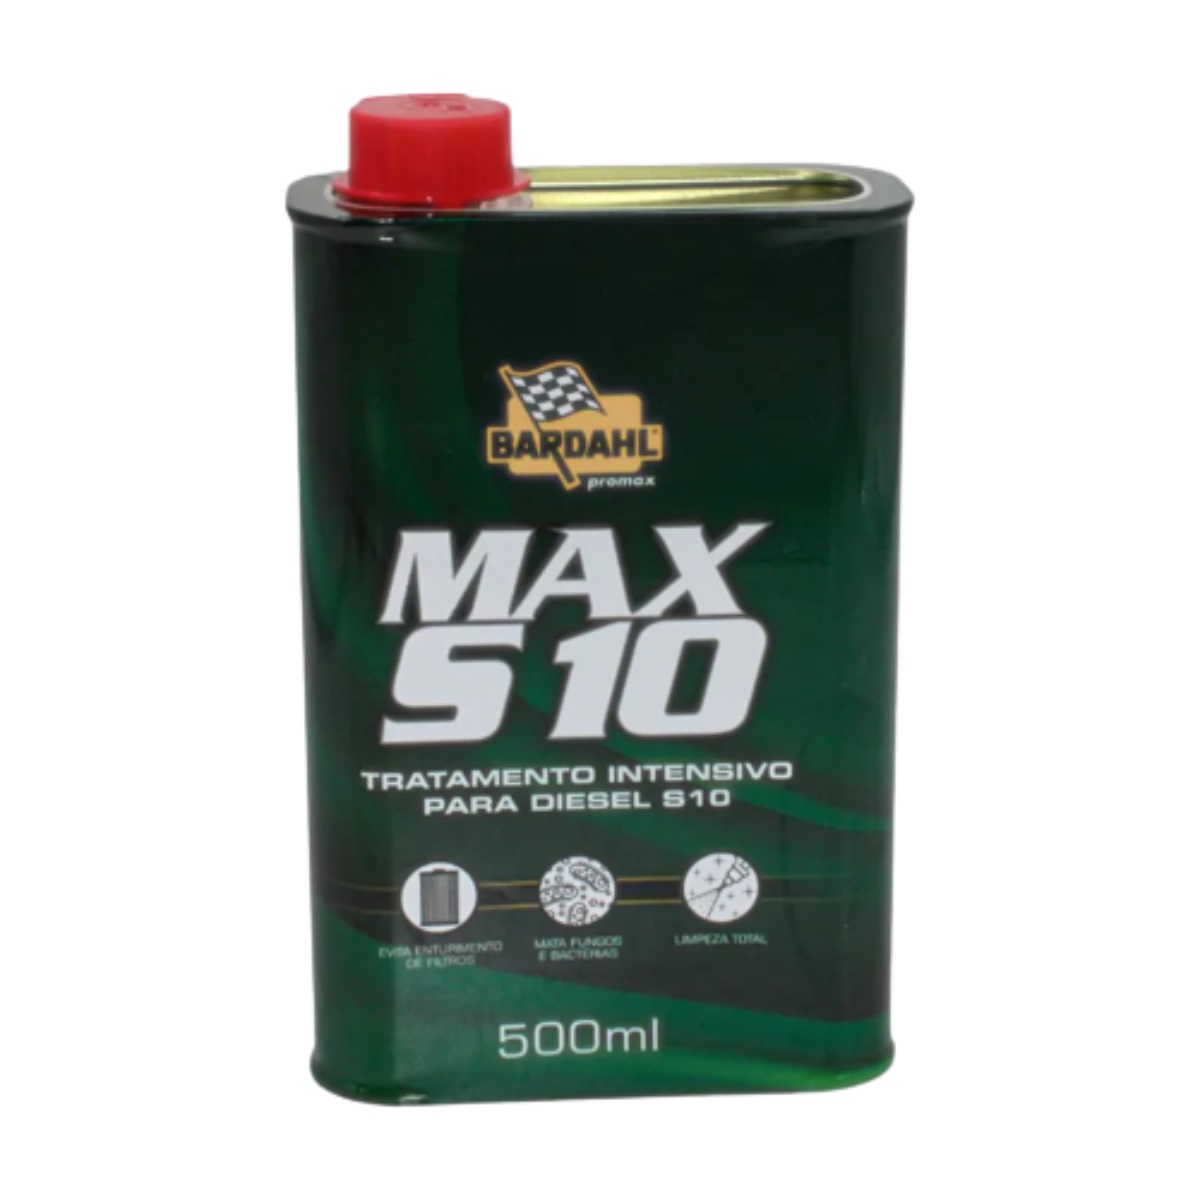 Prolonga Bardhal Aditivo Oleo De Motor - 500ml Bardahl Max S10 500ml